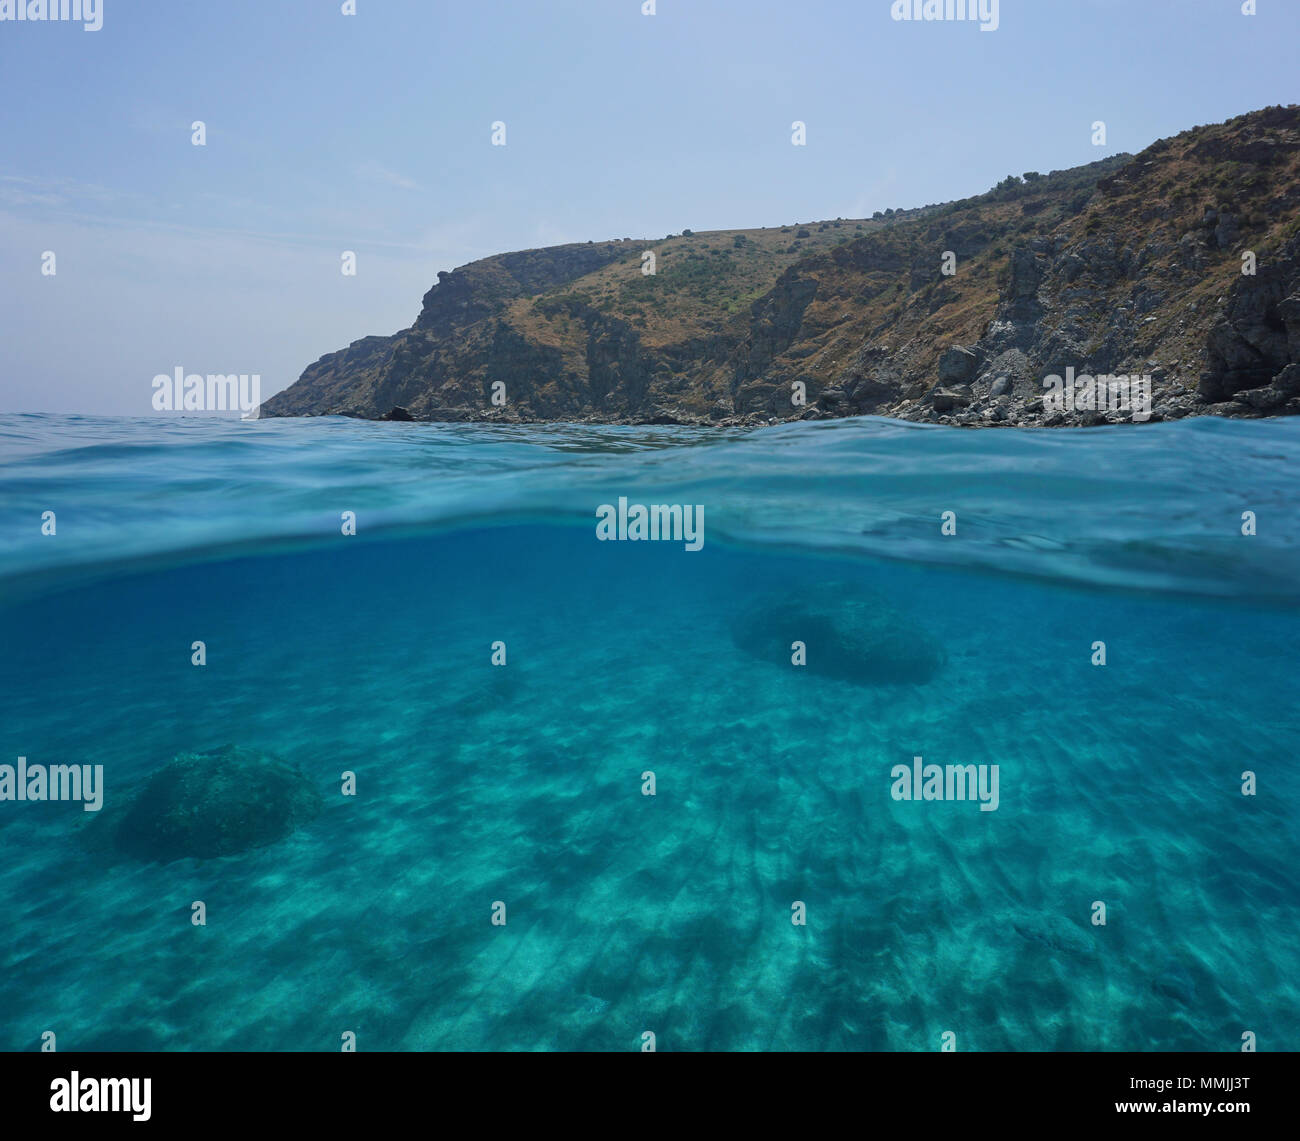 An der Küste Felsen und Sand unter Wasser, geteilte Ansicht oberhalb und unterhalb der Wasseroberfläche, Mittelmeer, Marine Reserve von Banyuls Cerbere, Frankreich Stockfoto